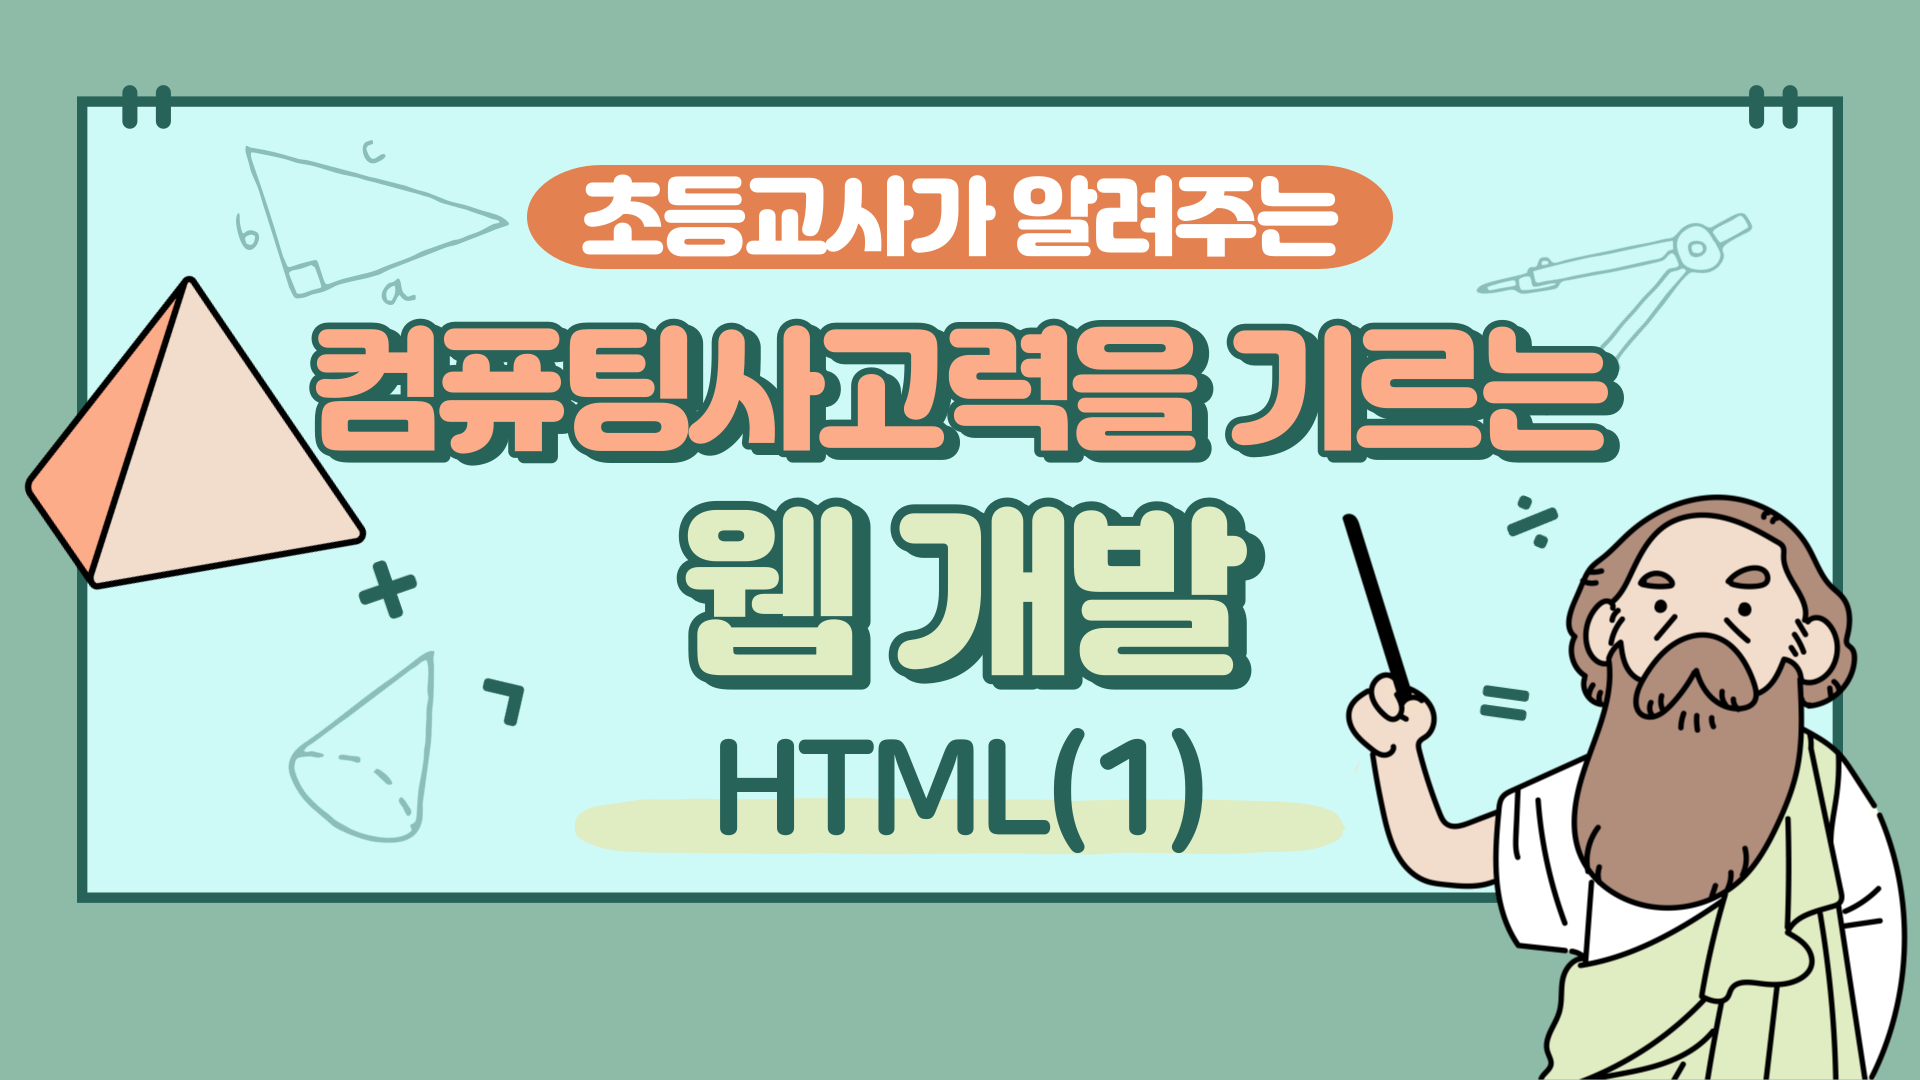 컴퓨팅사고력을 기르는 웹 개발(HTML) Step.1 (3기)